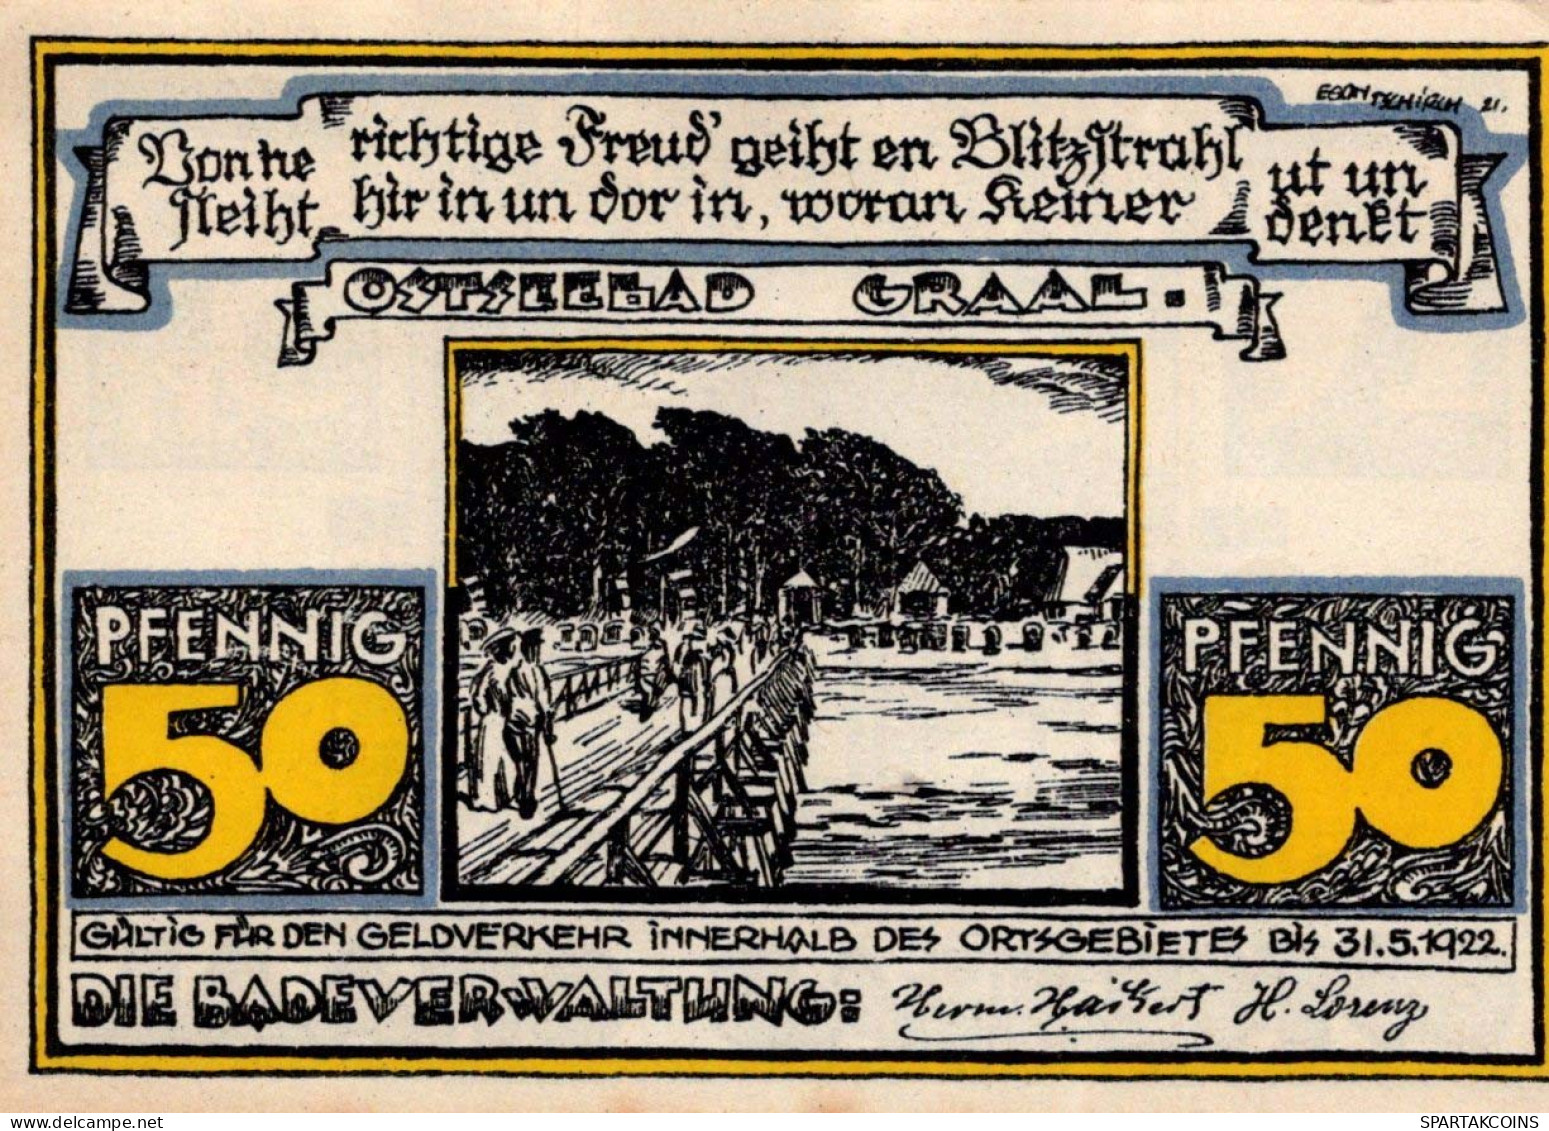 50 PFENNIG 1922 Stadt GRAAL Mecklenburg-Schwerin UNC DEUTSCHLAND Notgeld #PH277 - [11] Local Banknote Issues